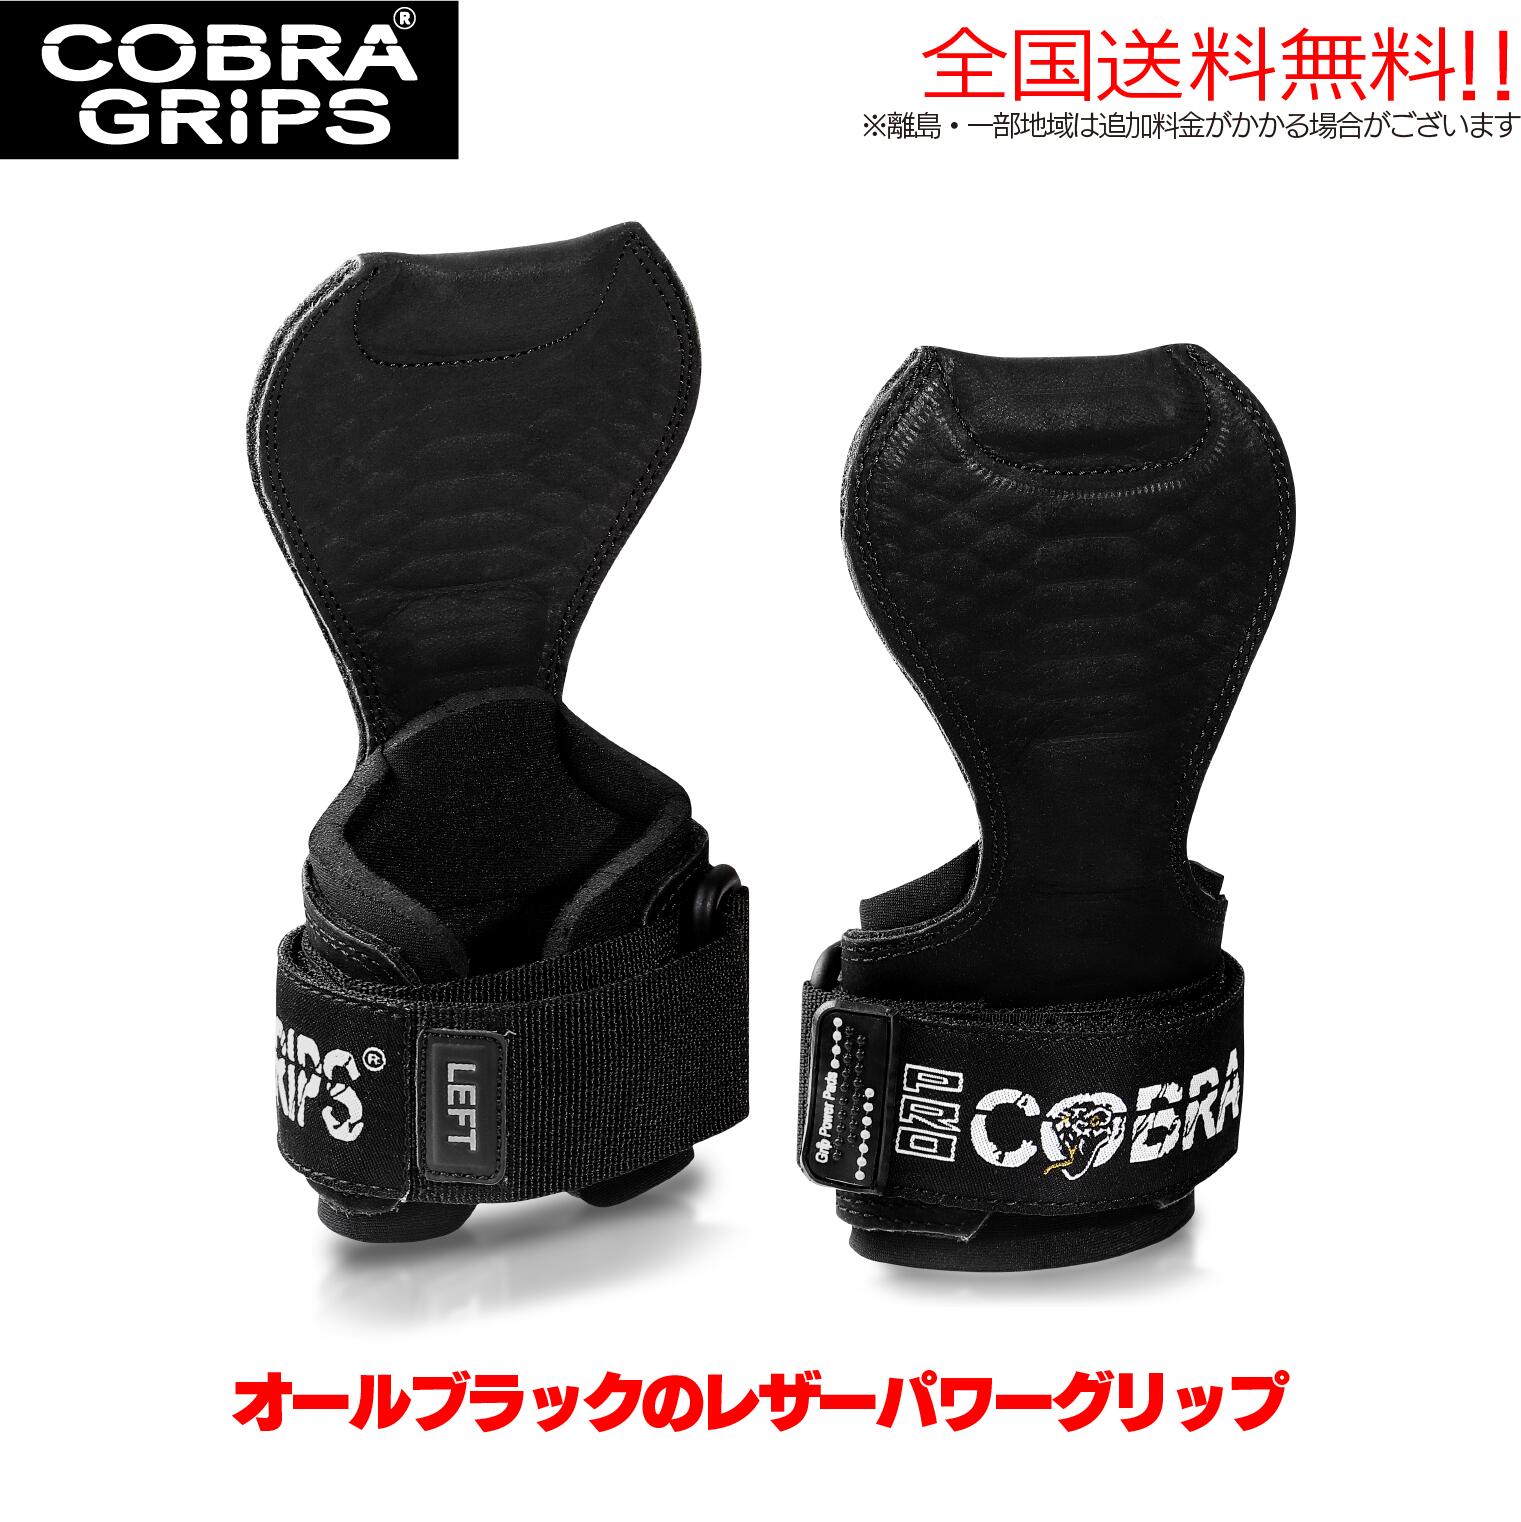  コブラグリップス Cobra Grips レザー パワー グリップ トレーニング リストラップ ウエイトトレーニング トレーニンググローブ パワーグリップ レディース 筋トレ グローブ コブラグリップ ダンベル グッズ ジム  ブラック バーベル リストストラップ